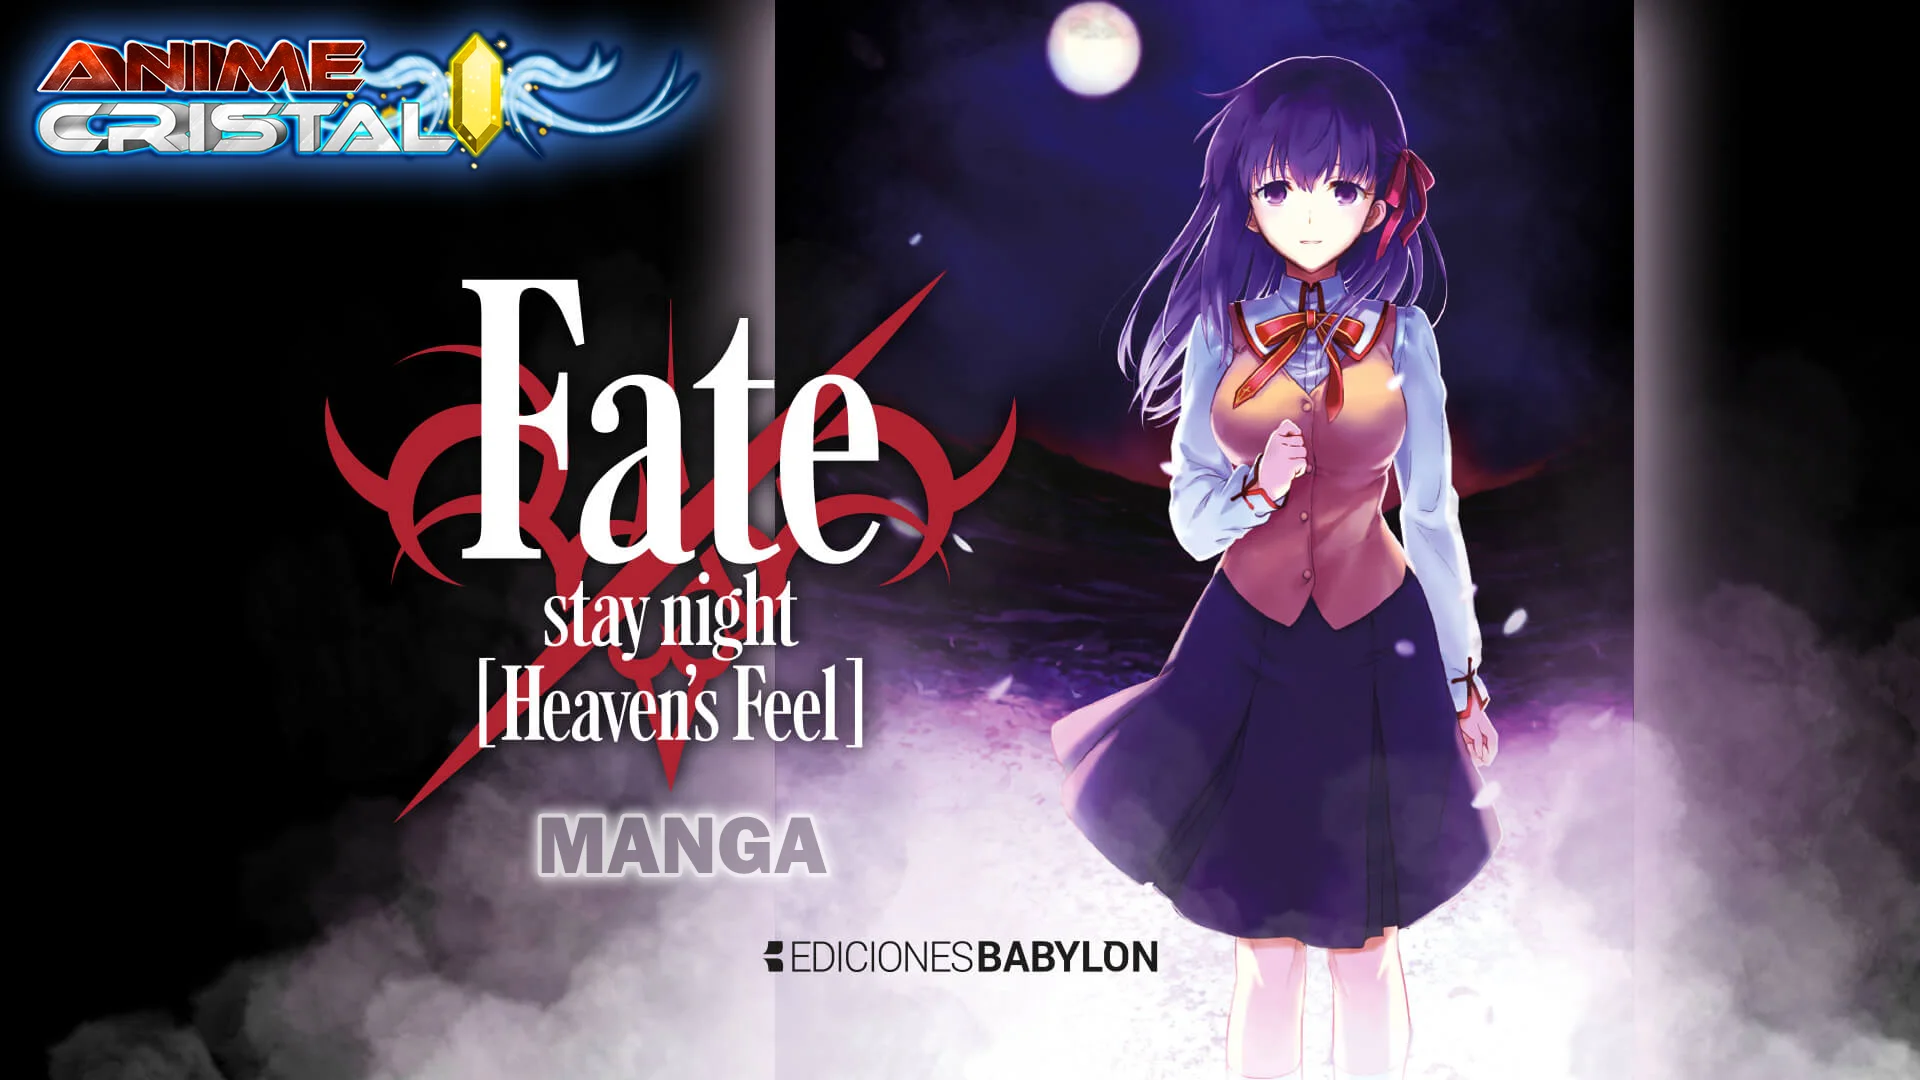 Manga Fate stay night Heavens Feel